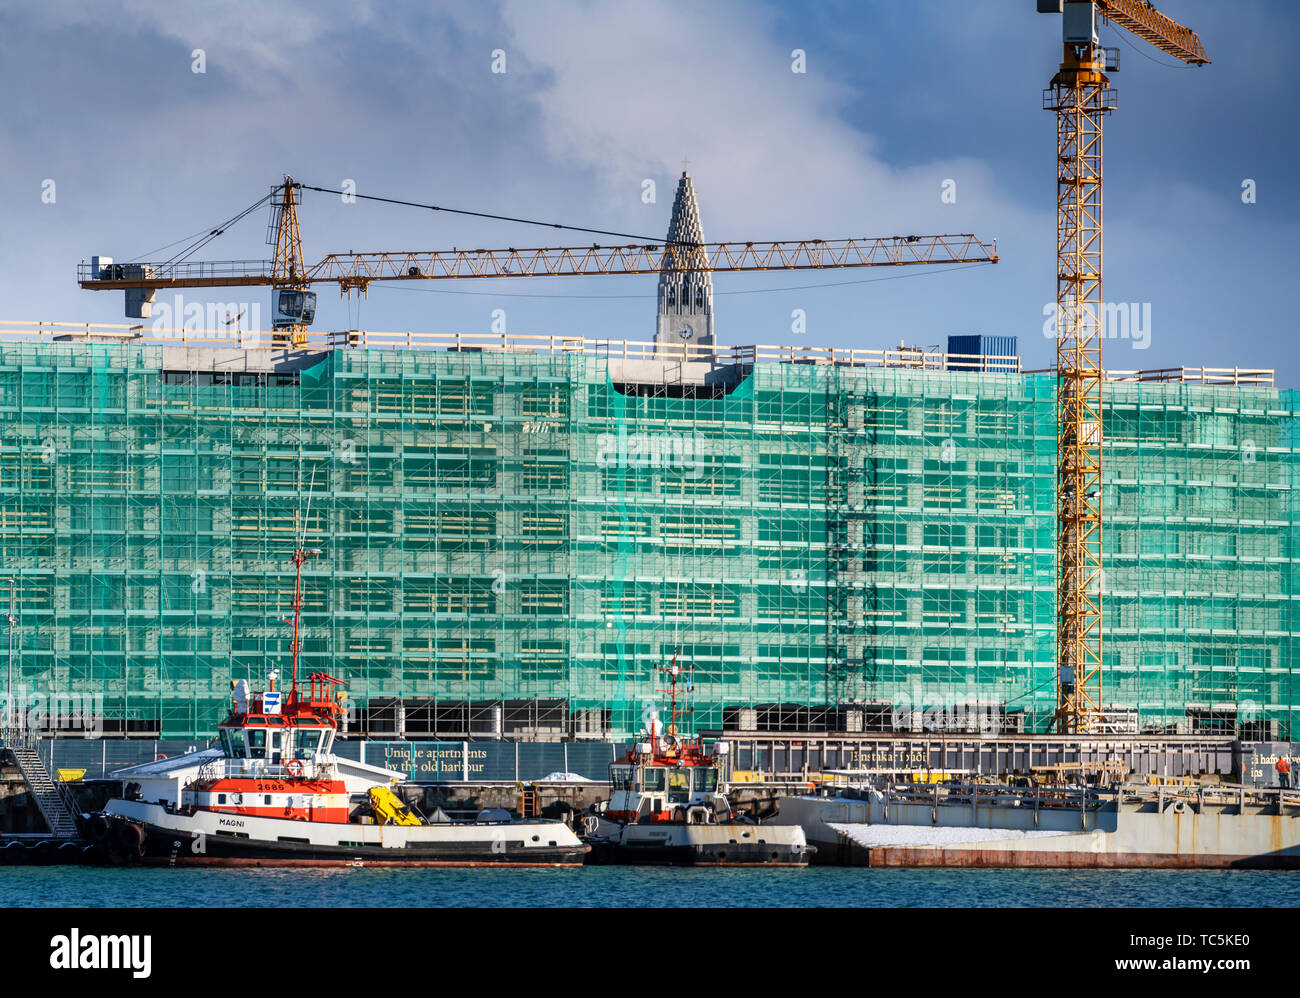 Reykjavik Harbor and Construction, Reykjavik, Iceland Stock Photo